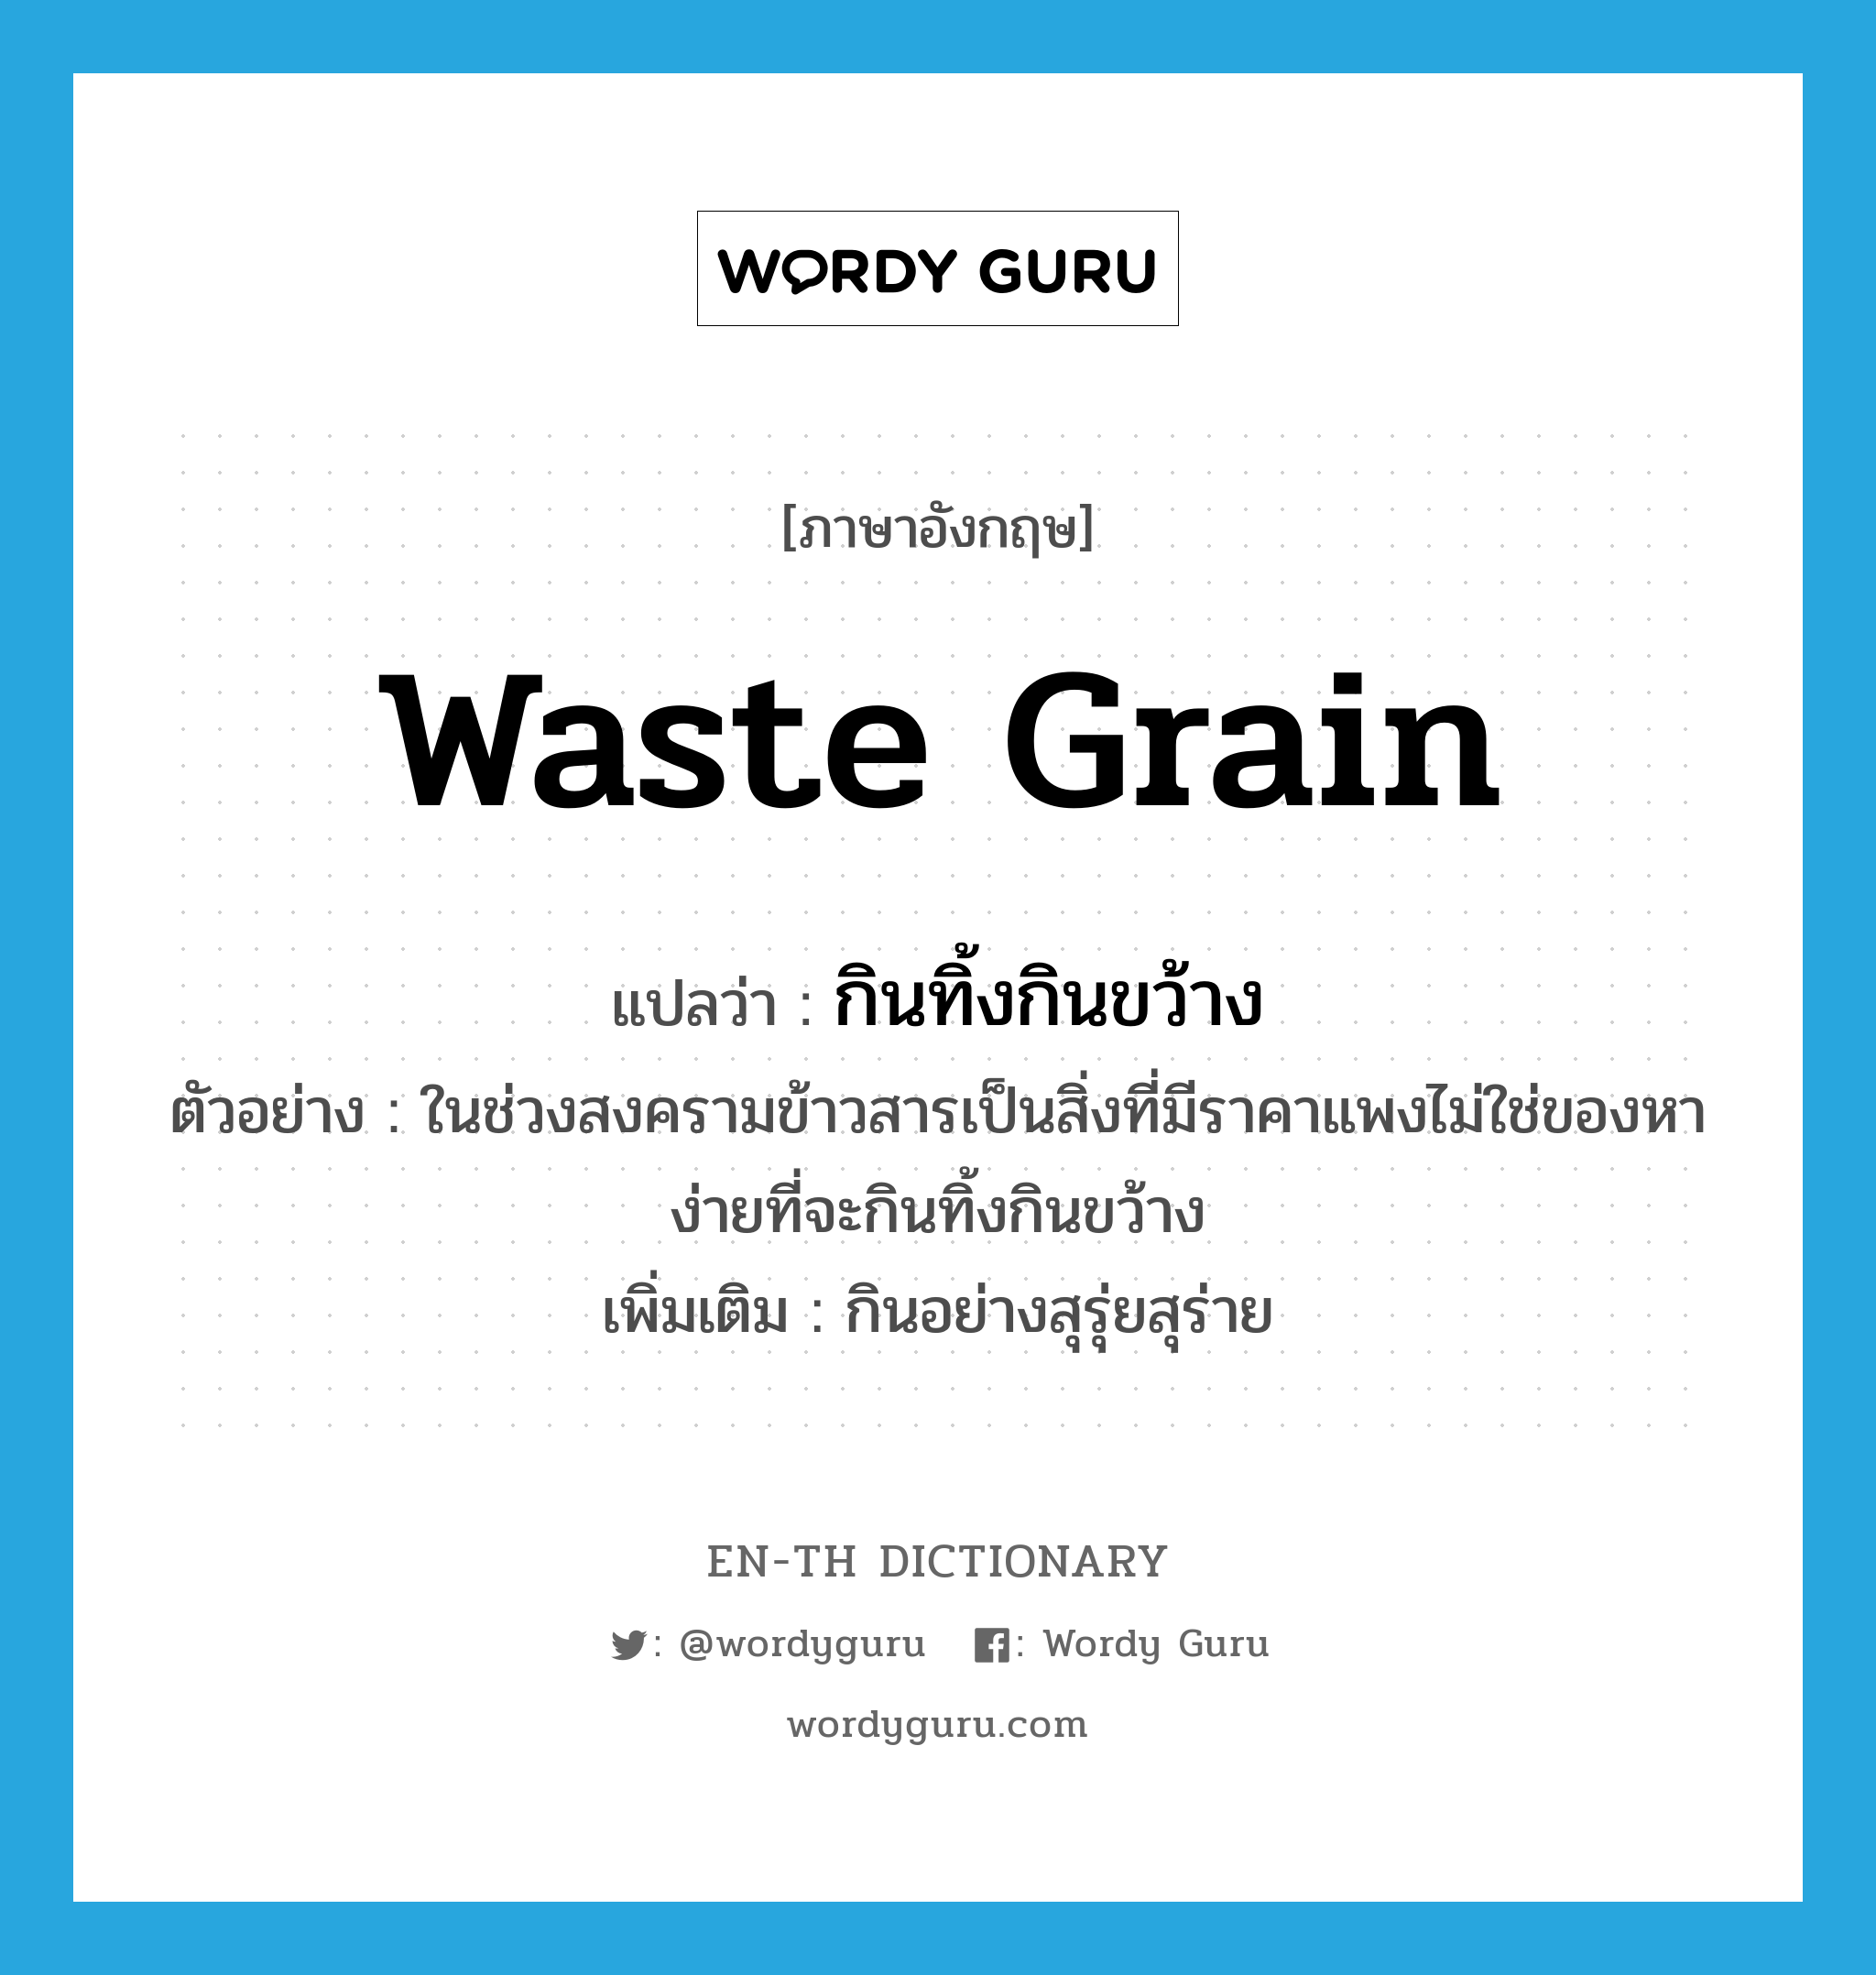 waste grain แปลว่า?, คำศัพท์ภาษาอังกฤษ waste grain แปลว่า กินทิ้งกินขว้าง ประเภท V ตัวอย่าง ในช่วงสงครามข้าวสารเป็นสิ่งที่มีราคาแพงไม่ใช่ของหาง่ายที่จะกินทิ้งกินขว้าง เพิ่มเติม กินอย่างสุรุ่ยสุร่าย หมวด V